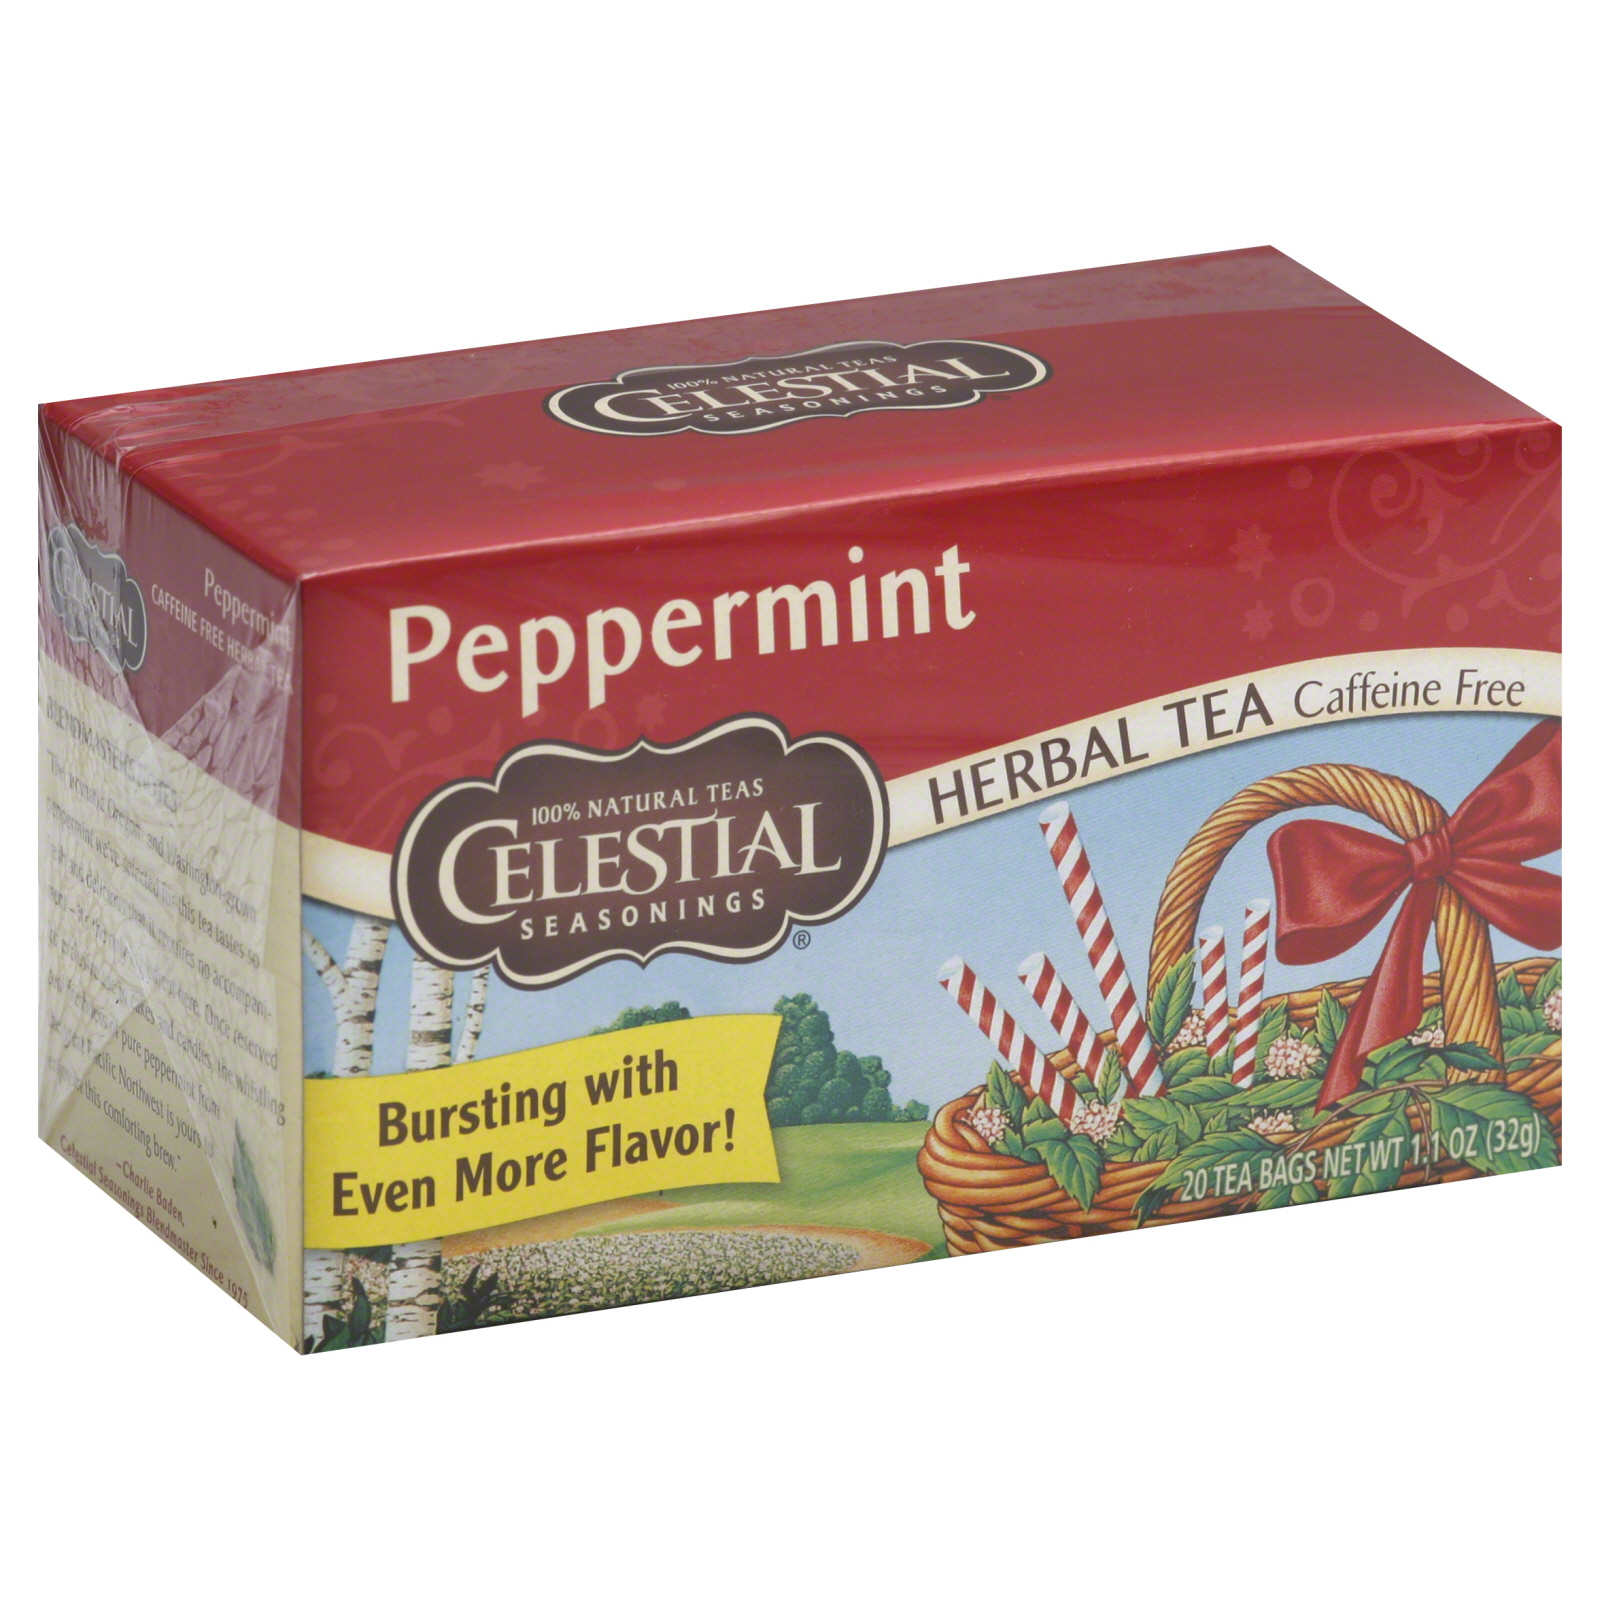 Celestial Seasonings Herbal Tea, Caffeine Free, Peppermint, 20 tea bags [1.1 oz (31 g)]